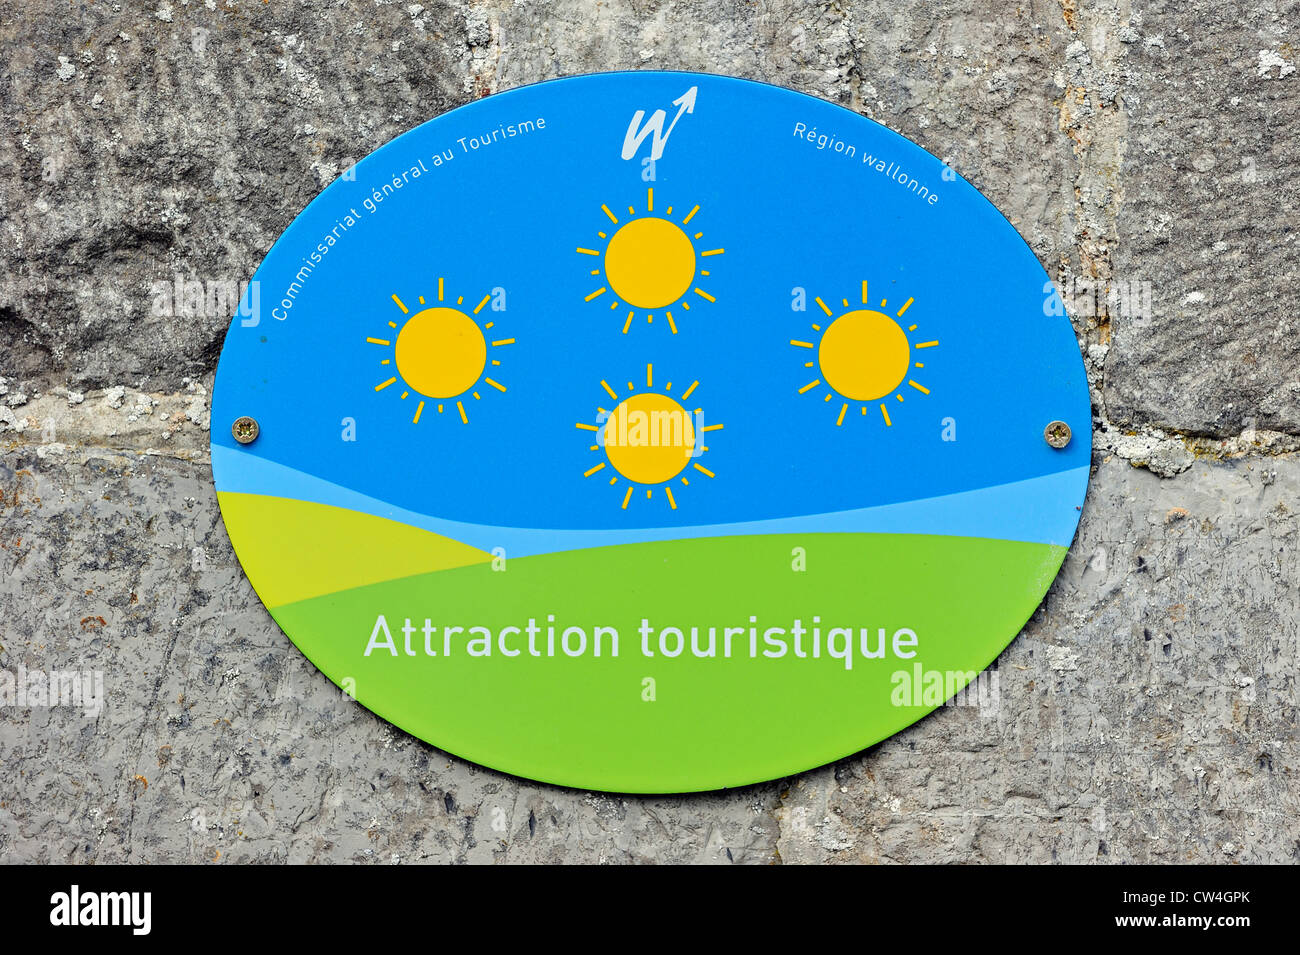 El escudo con el logotipo de turismo / lugar de interés turístico en Valonia, Bélgica Foto de stock